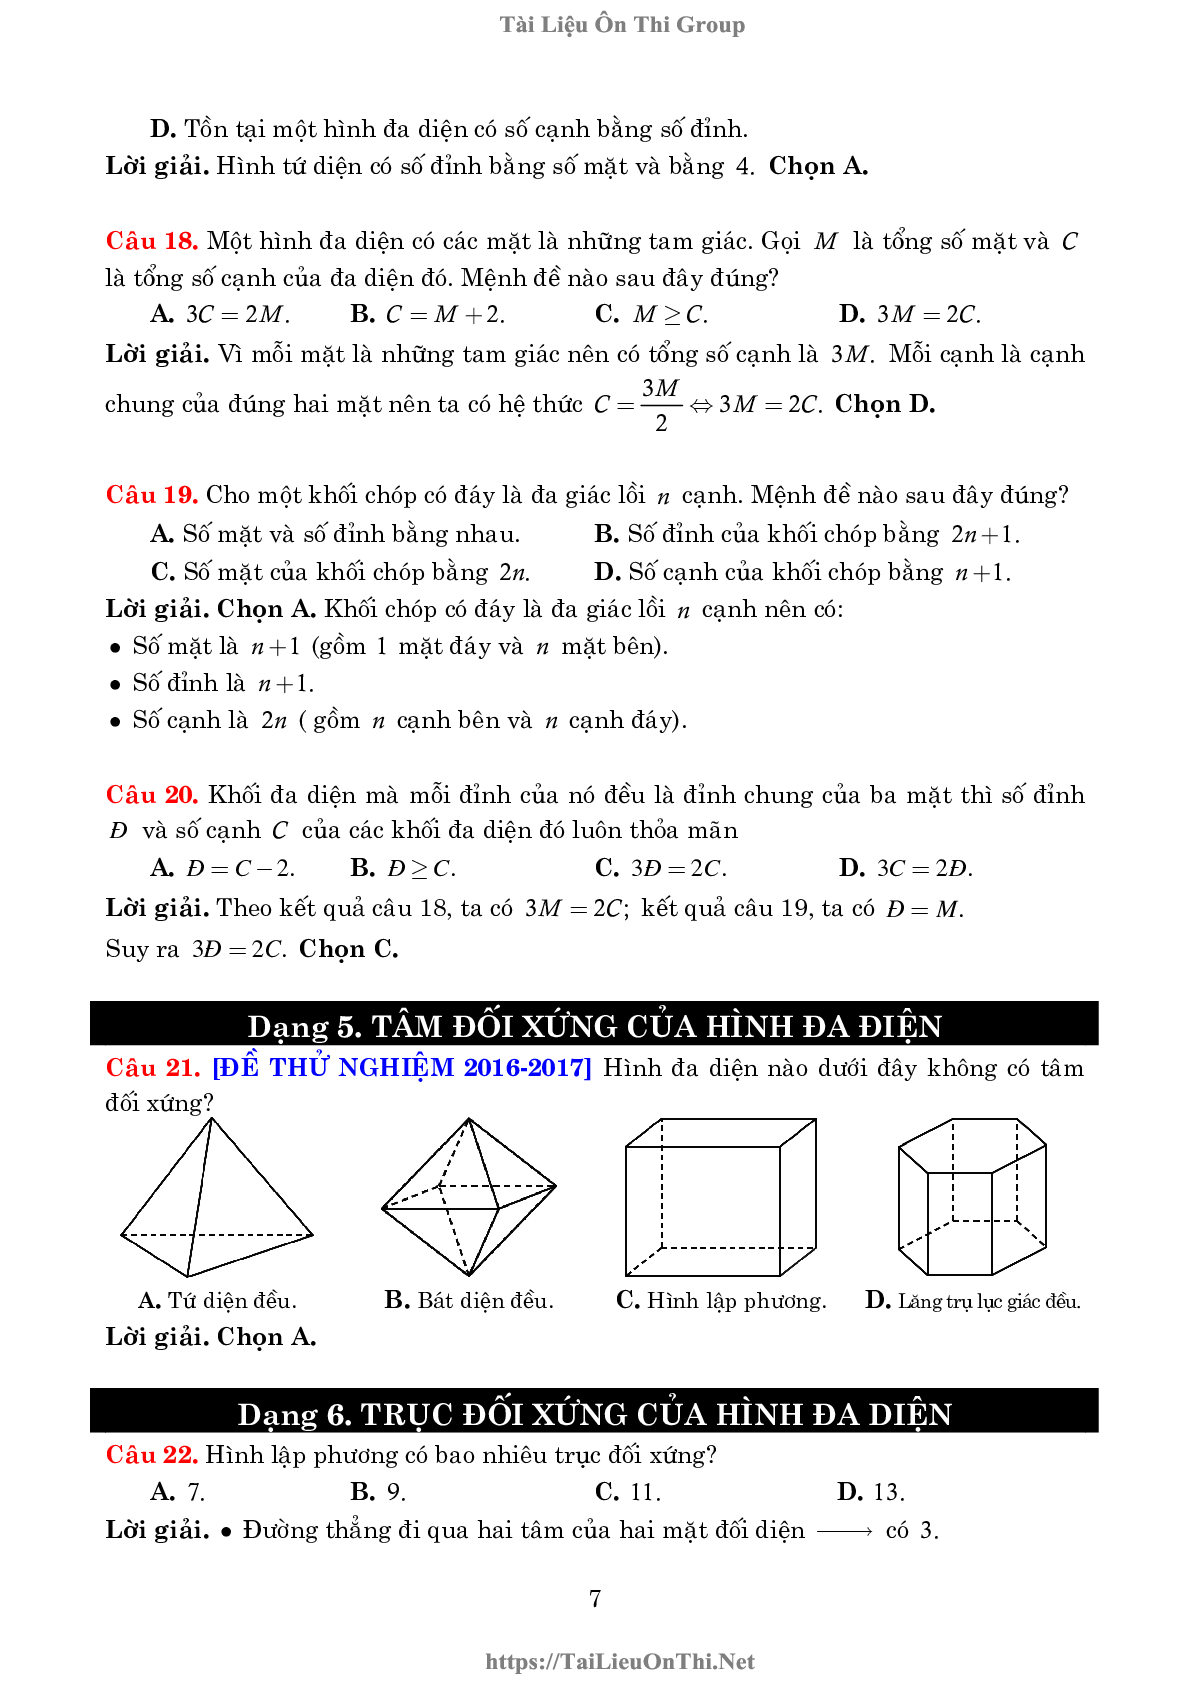 Lý thuyết và bài tập về khối đa diện và thể tích của chúng (trang 7)